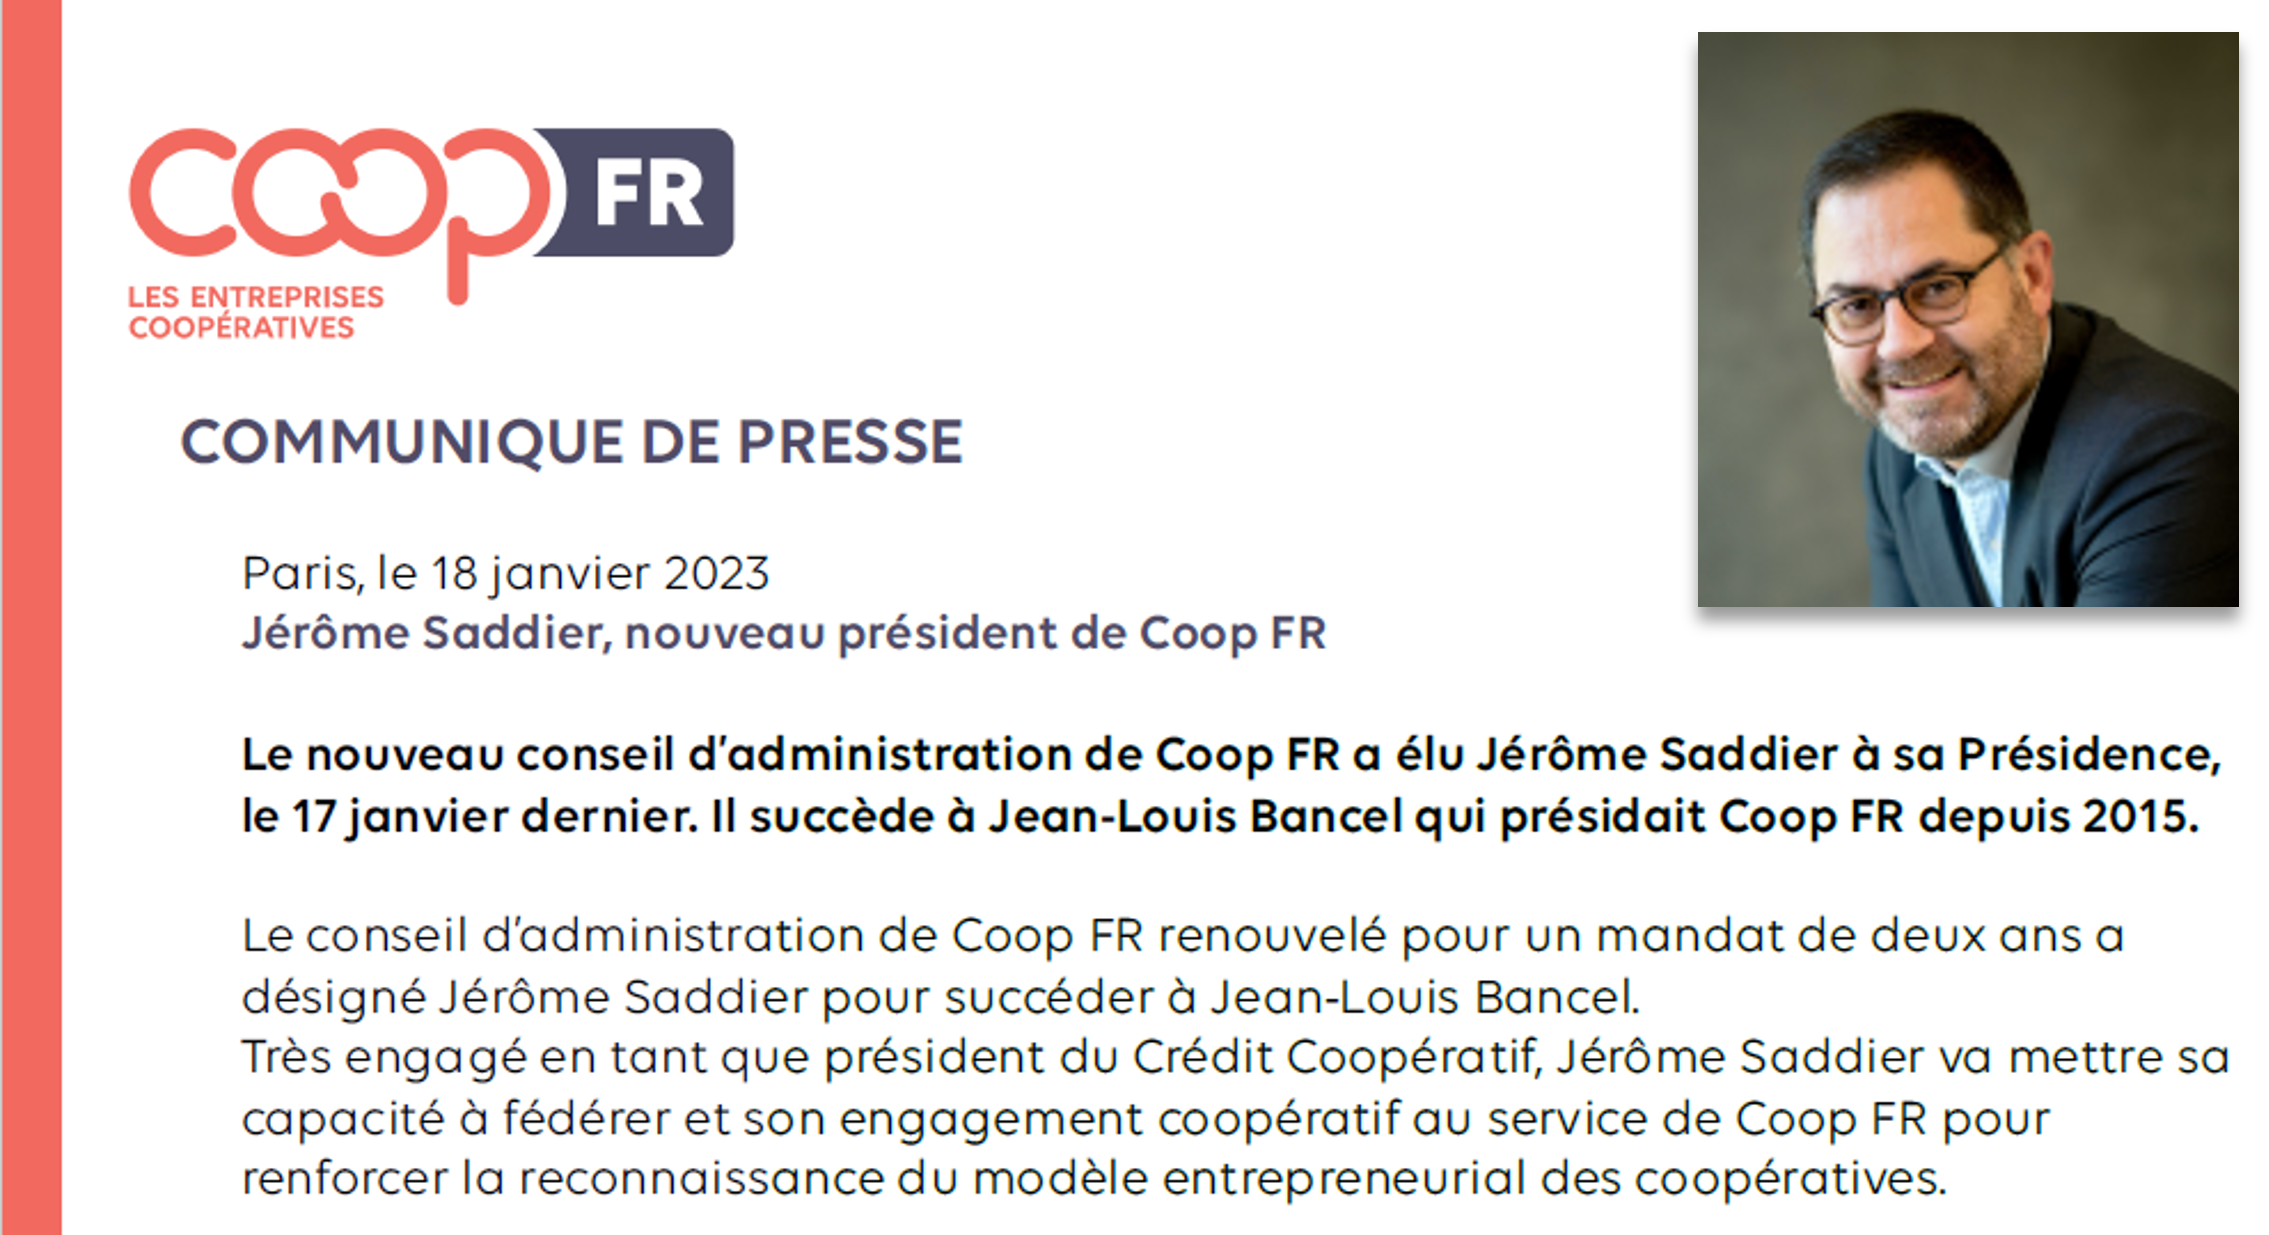 Jérôme Saddier, nouveau président de Coop FR